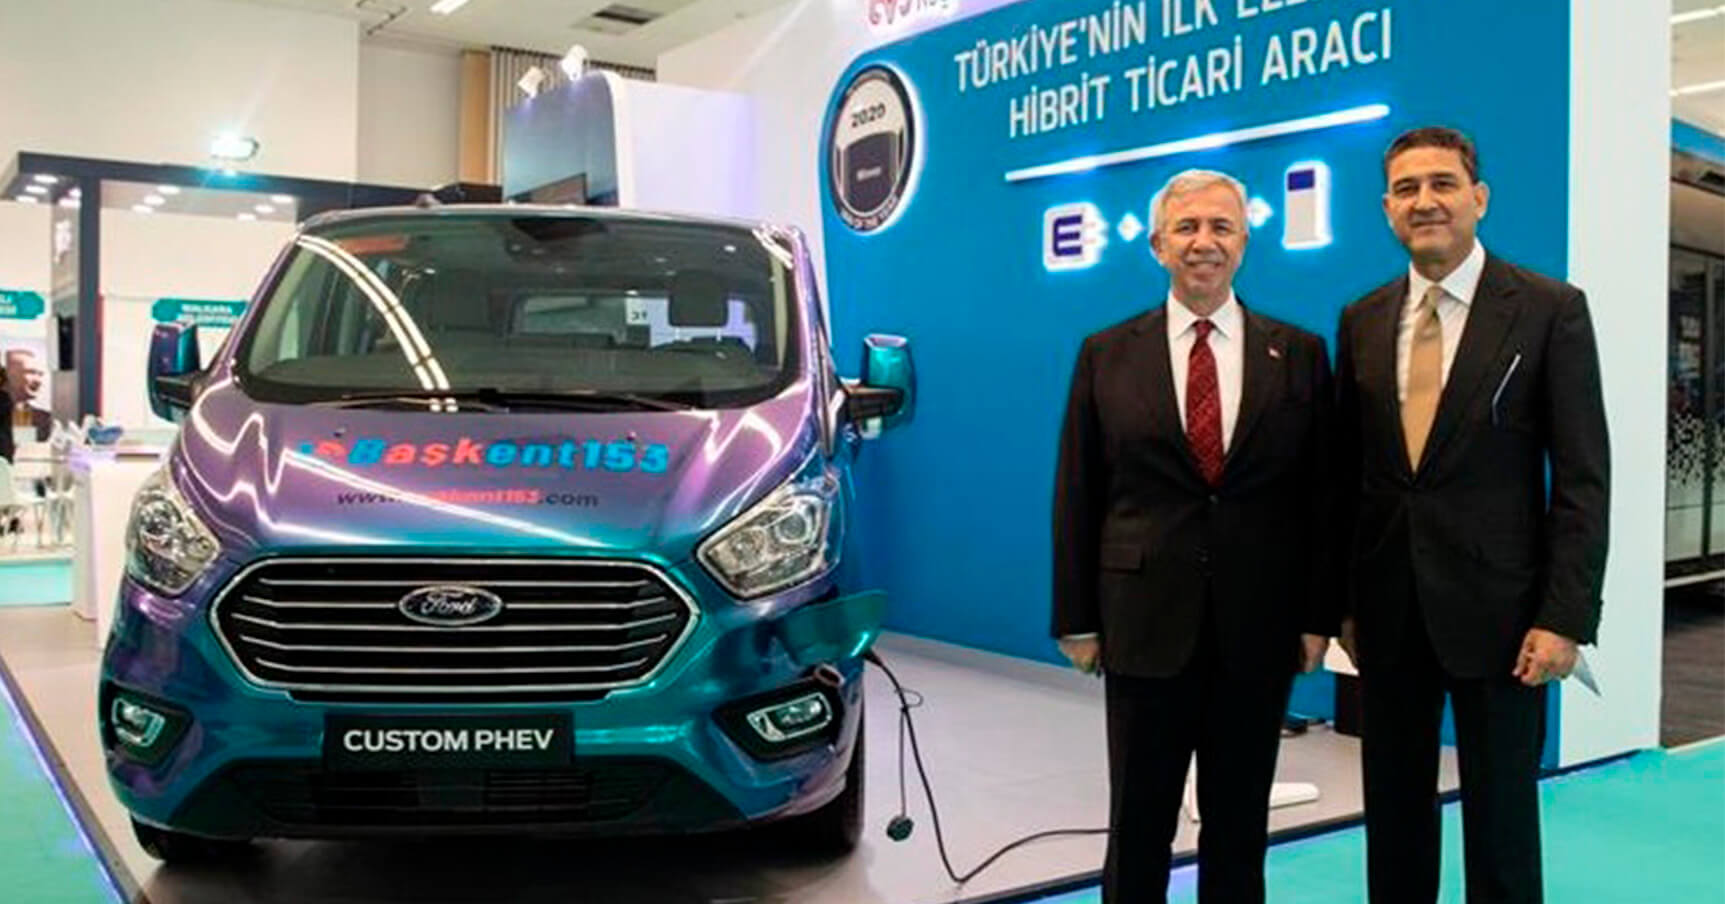 Ford Custom PHEV Türkiye’nin İlk Hibrit Ticari Aracı